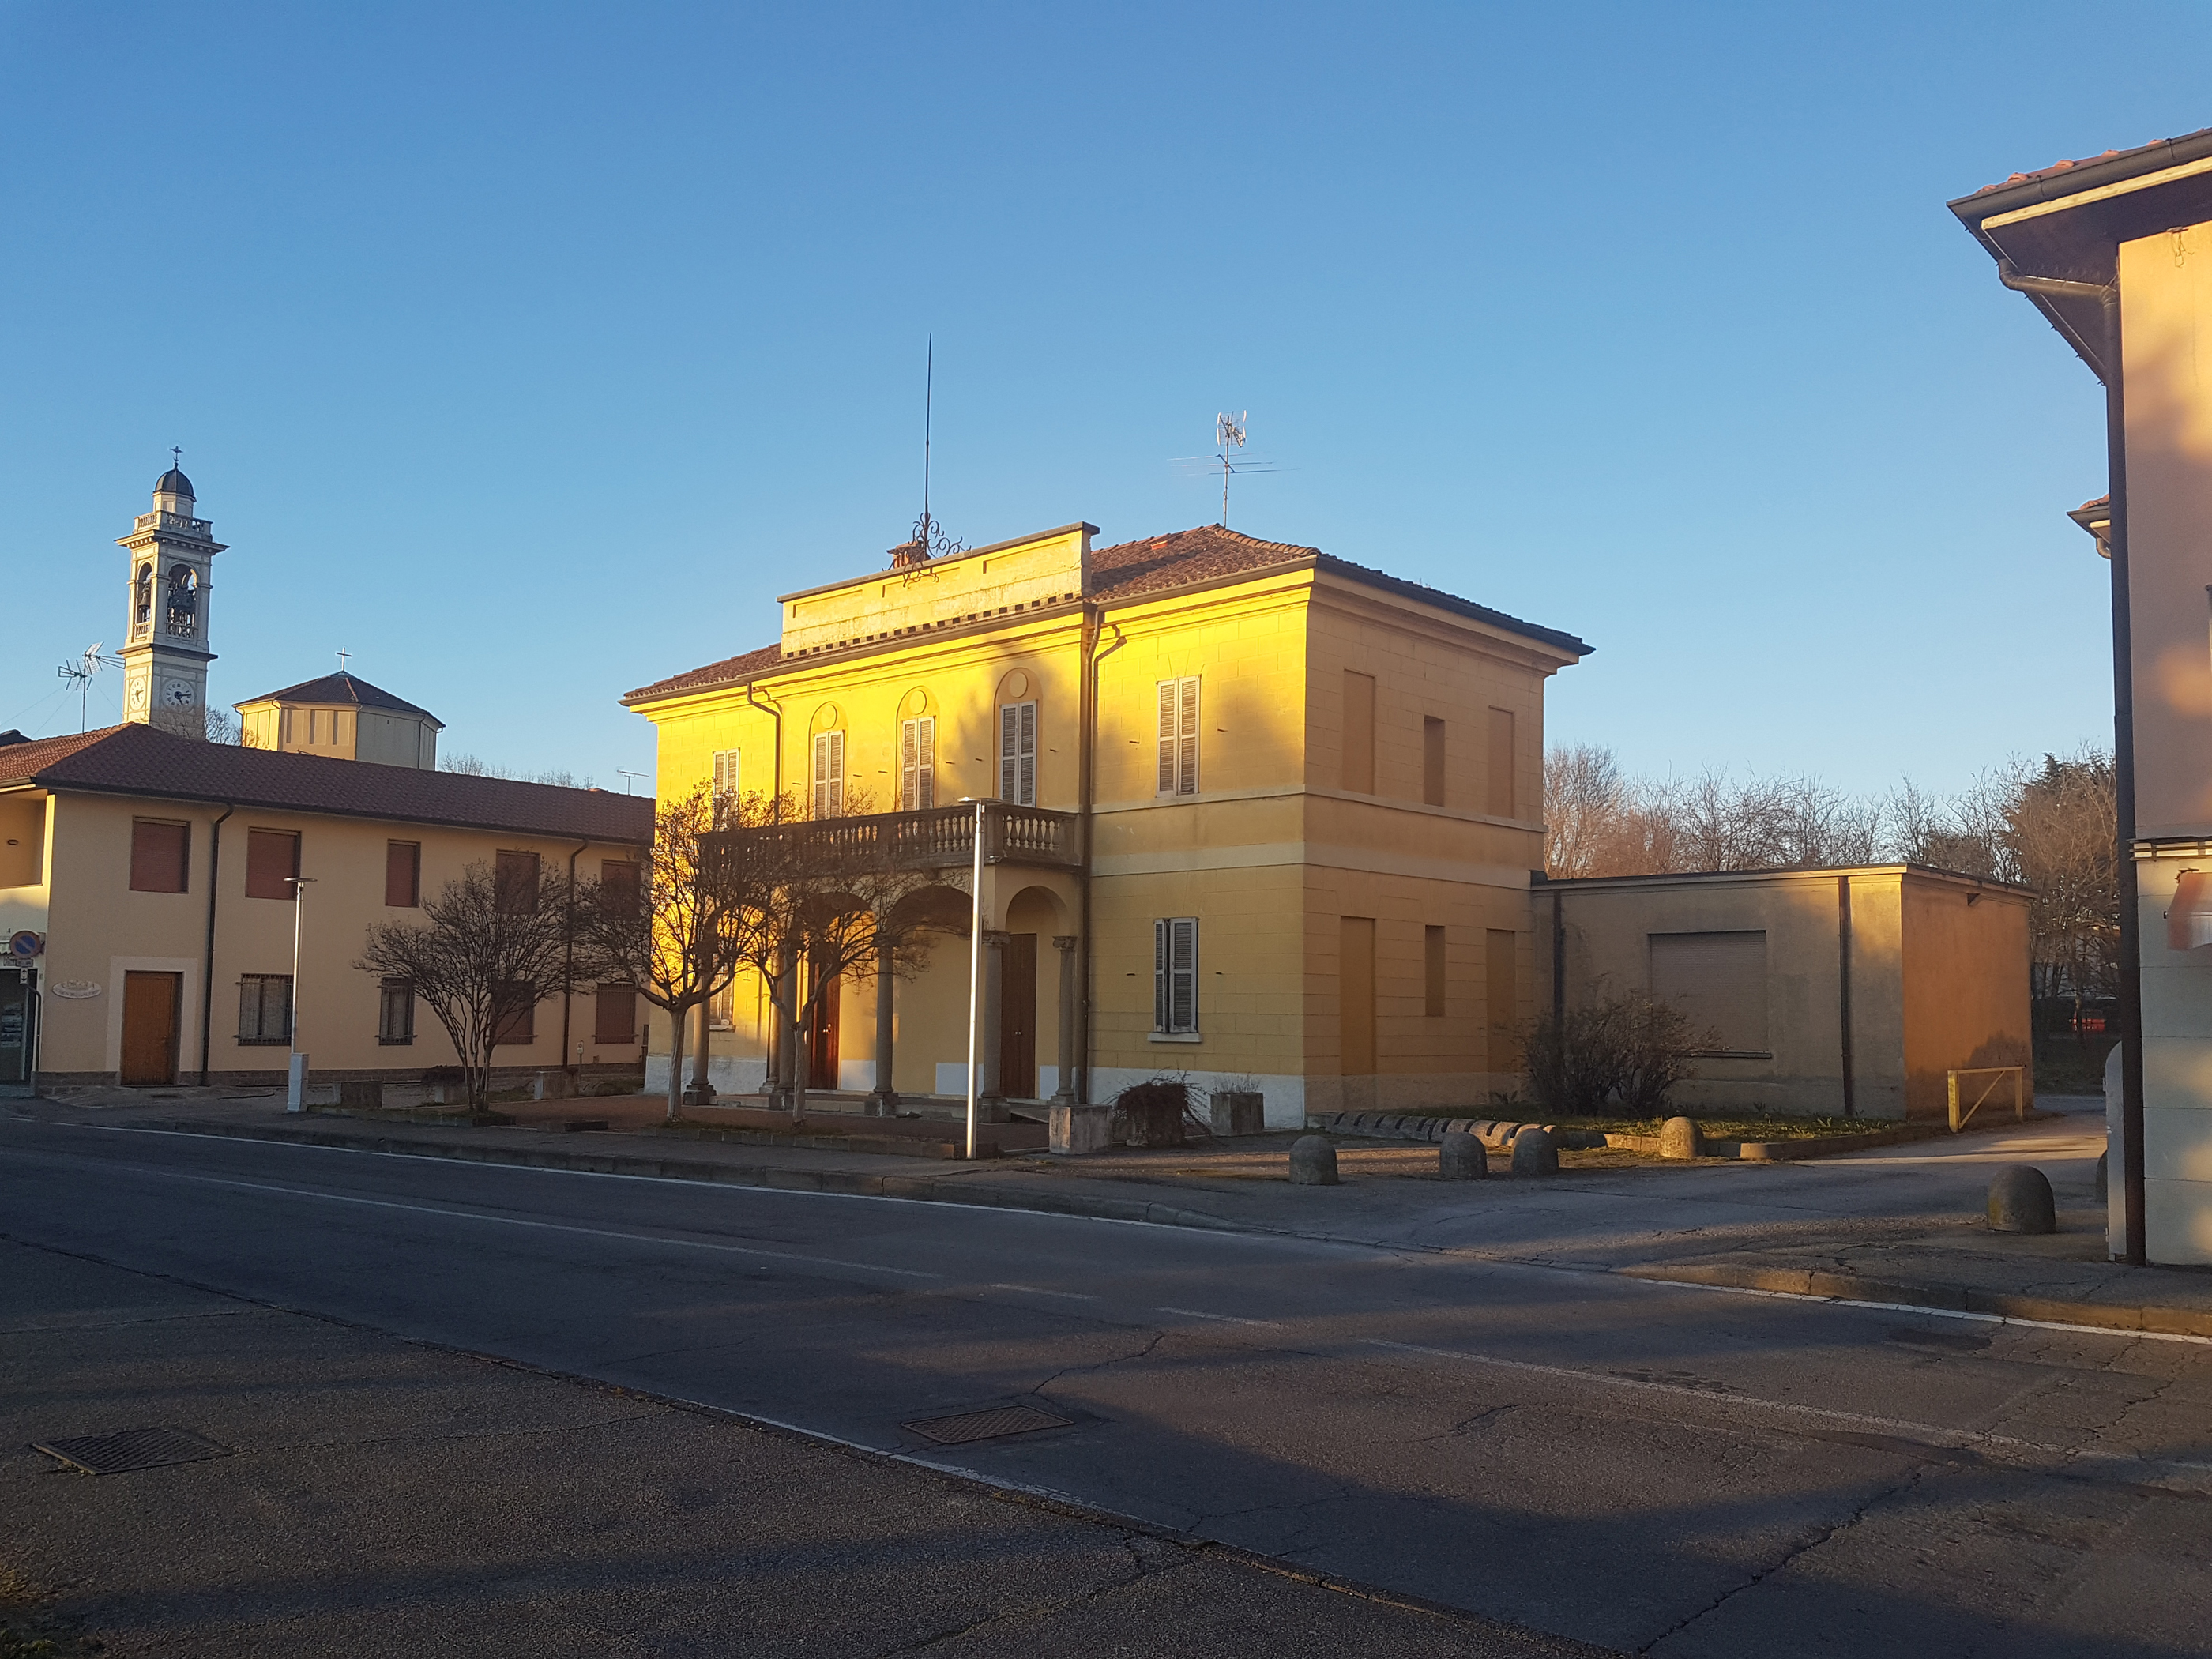 Villa Staurenghi (villa, monofamiliare) - Masate (MI)  (XIX, metà; XX, metà)